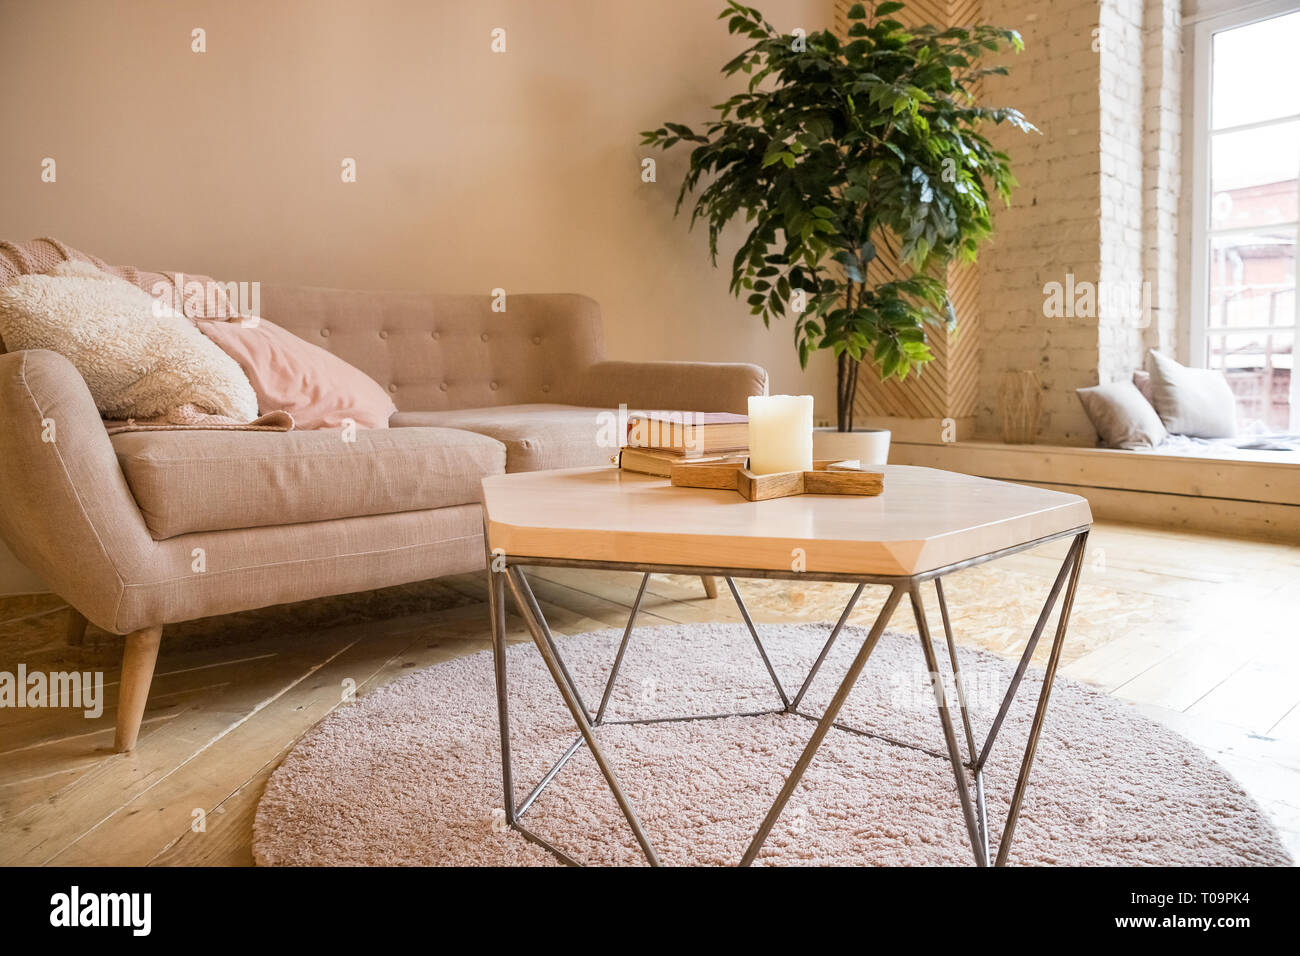 Sofa Couchtisch Und Pflanze Im Wohnzimmer Im Stil